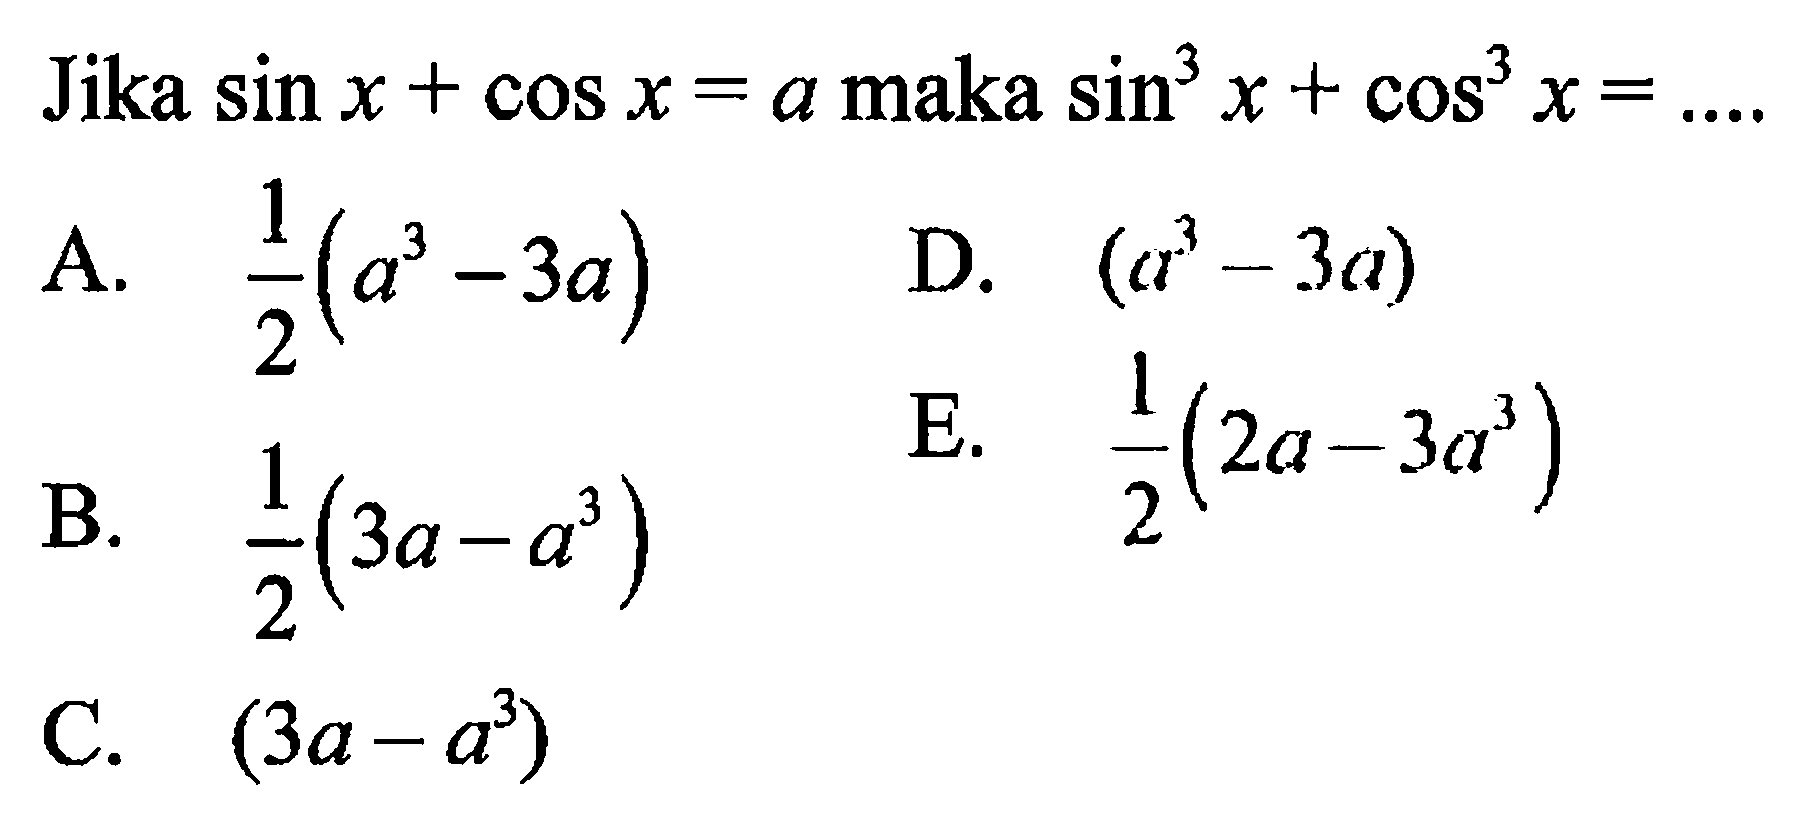 Jika sin x + cos x = a maka sin^3 x + cos^3 x = ....